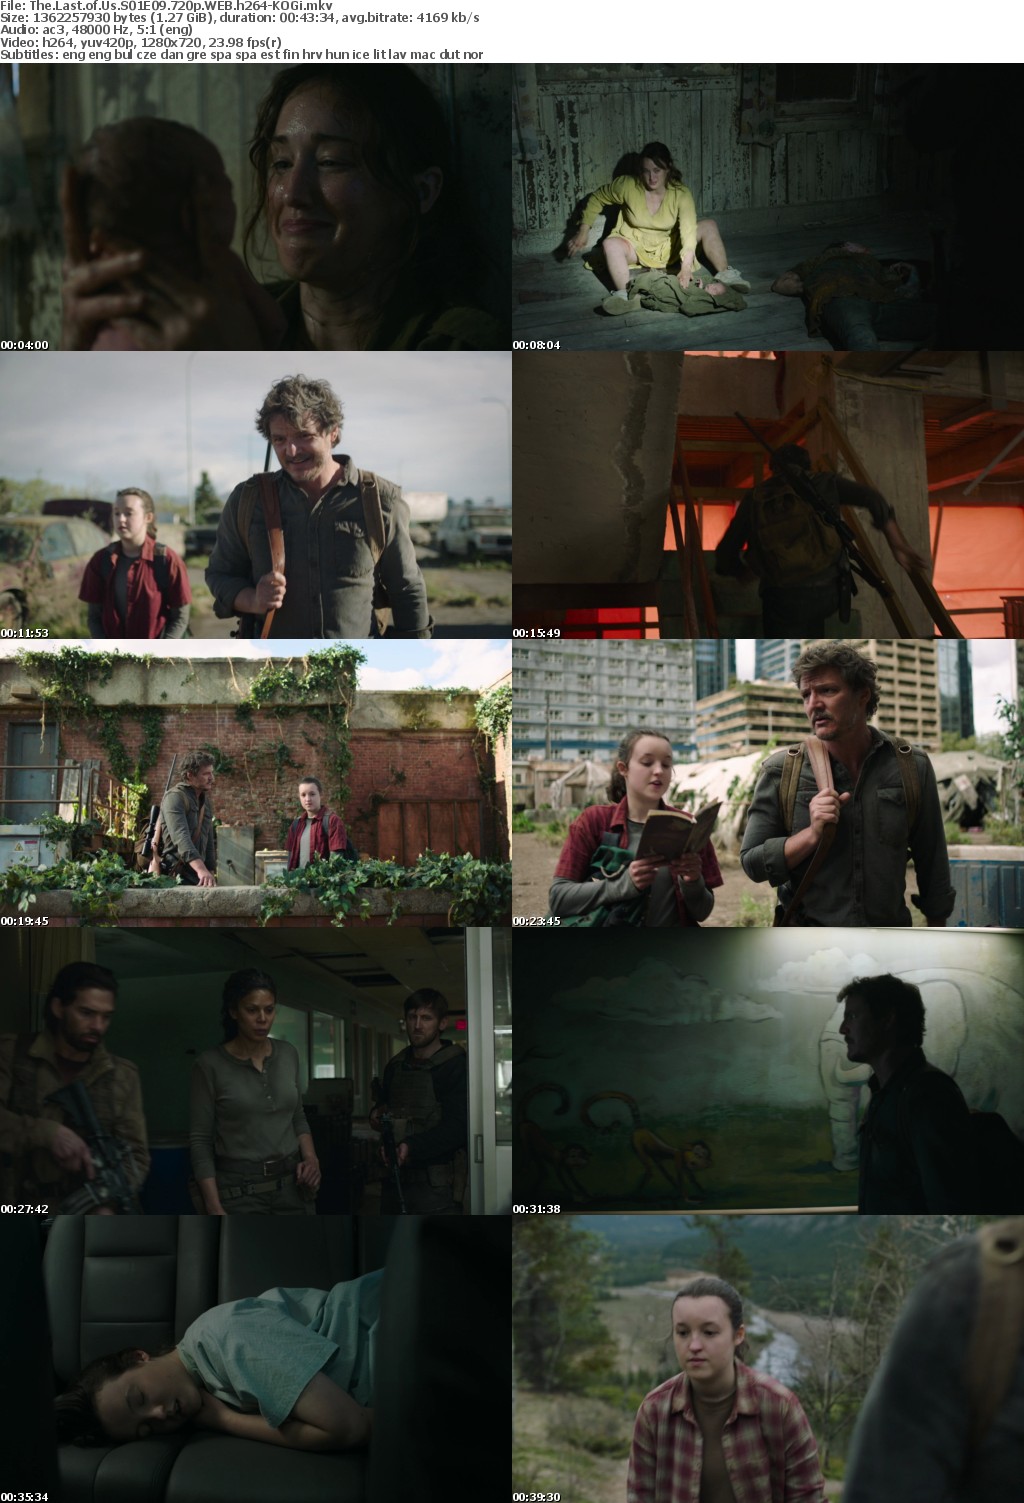 The Last of Us S01E09 720p WEB h264-KOGi